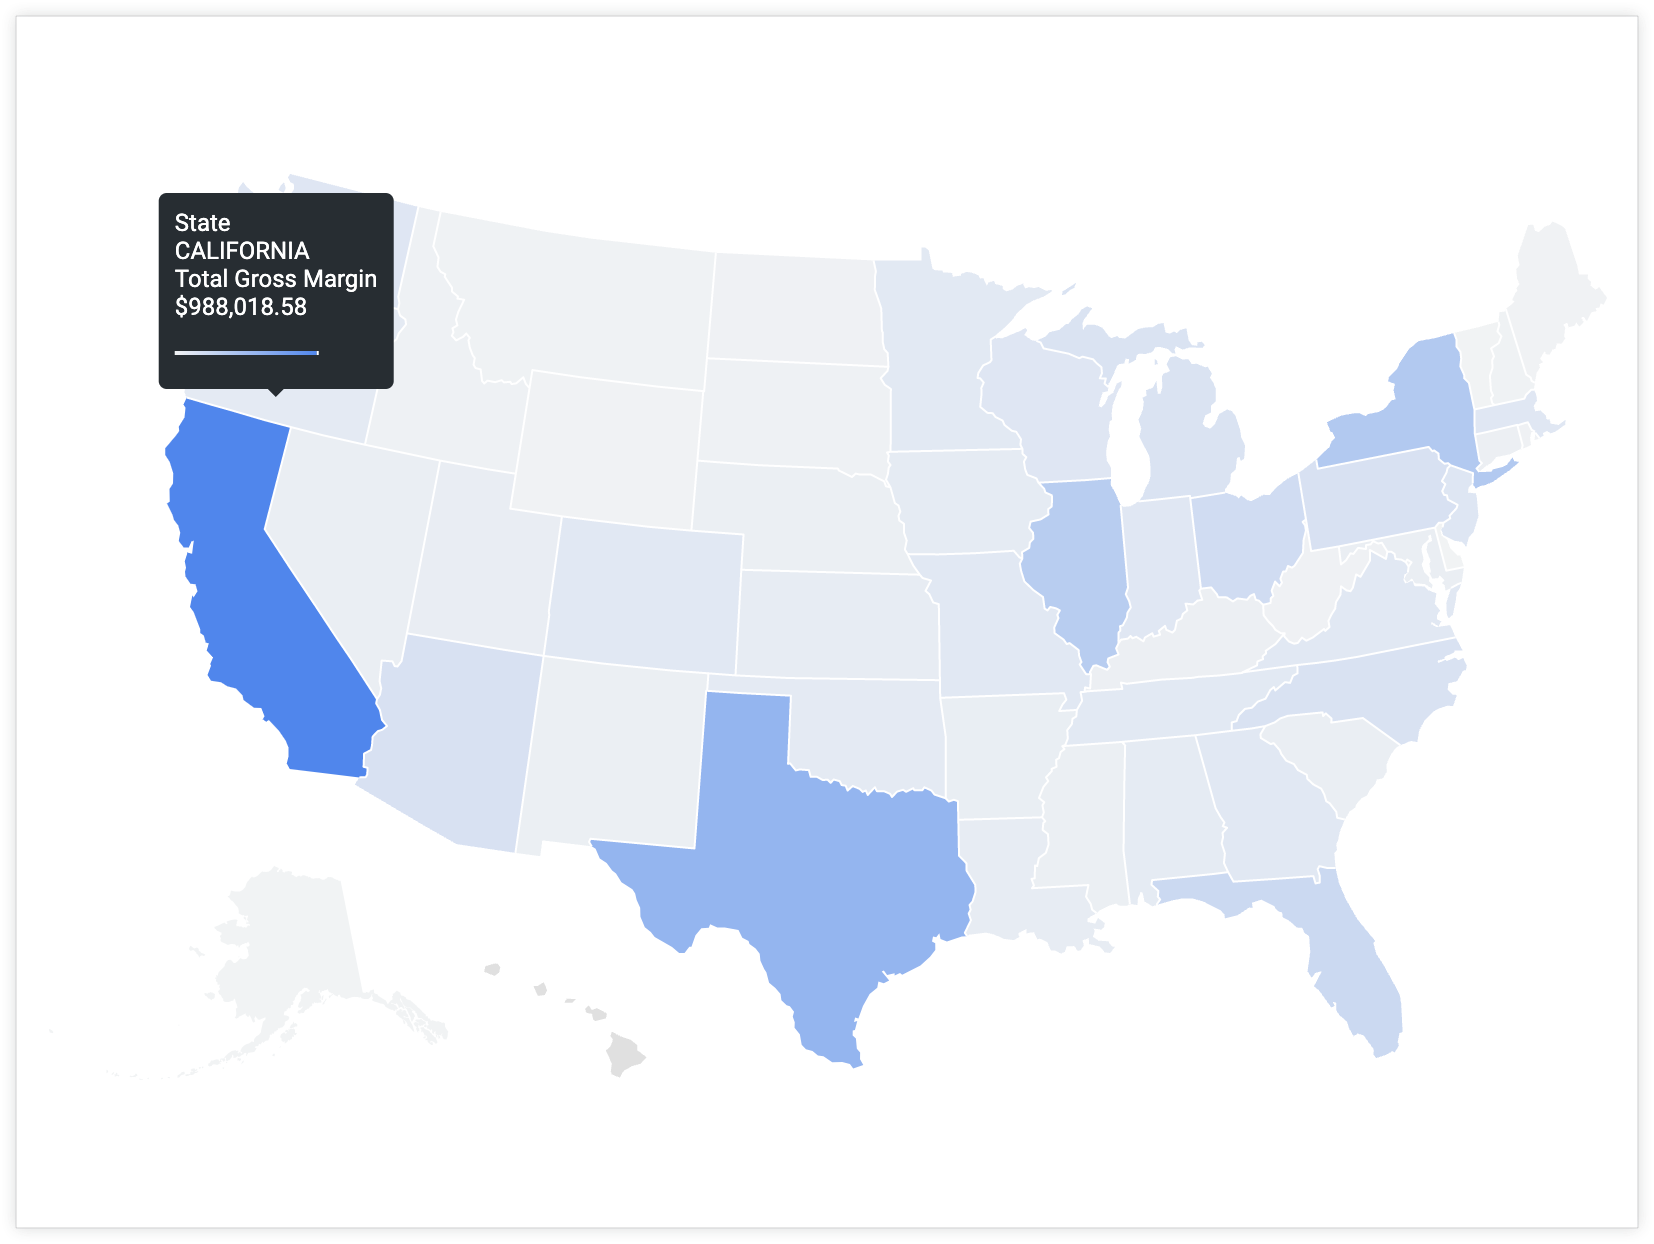 用户将光标悬停在加利福尼亚州上方，系统显示一条提示，其中包含州值“加利福尼亚州”和总毛利润值“$988,018.58”。